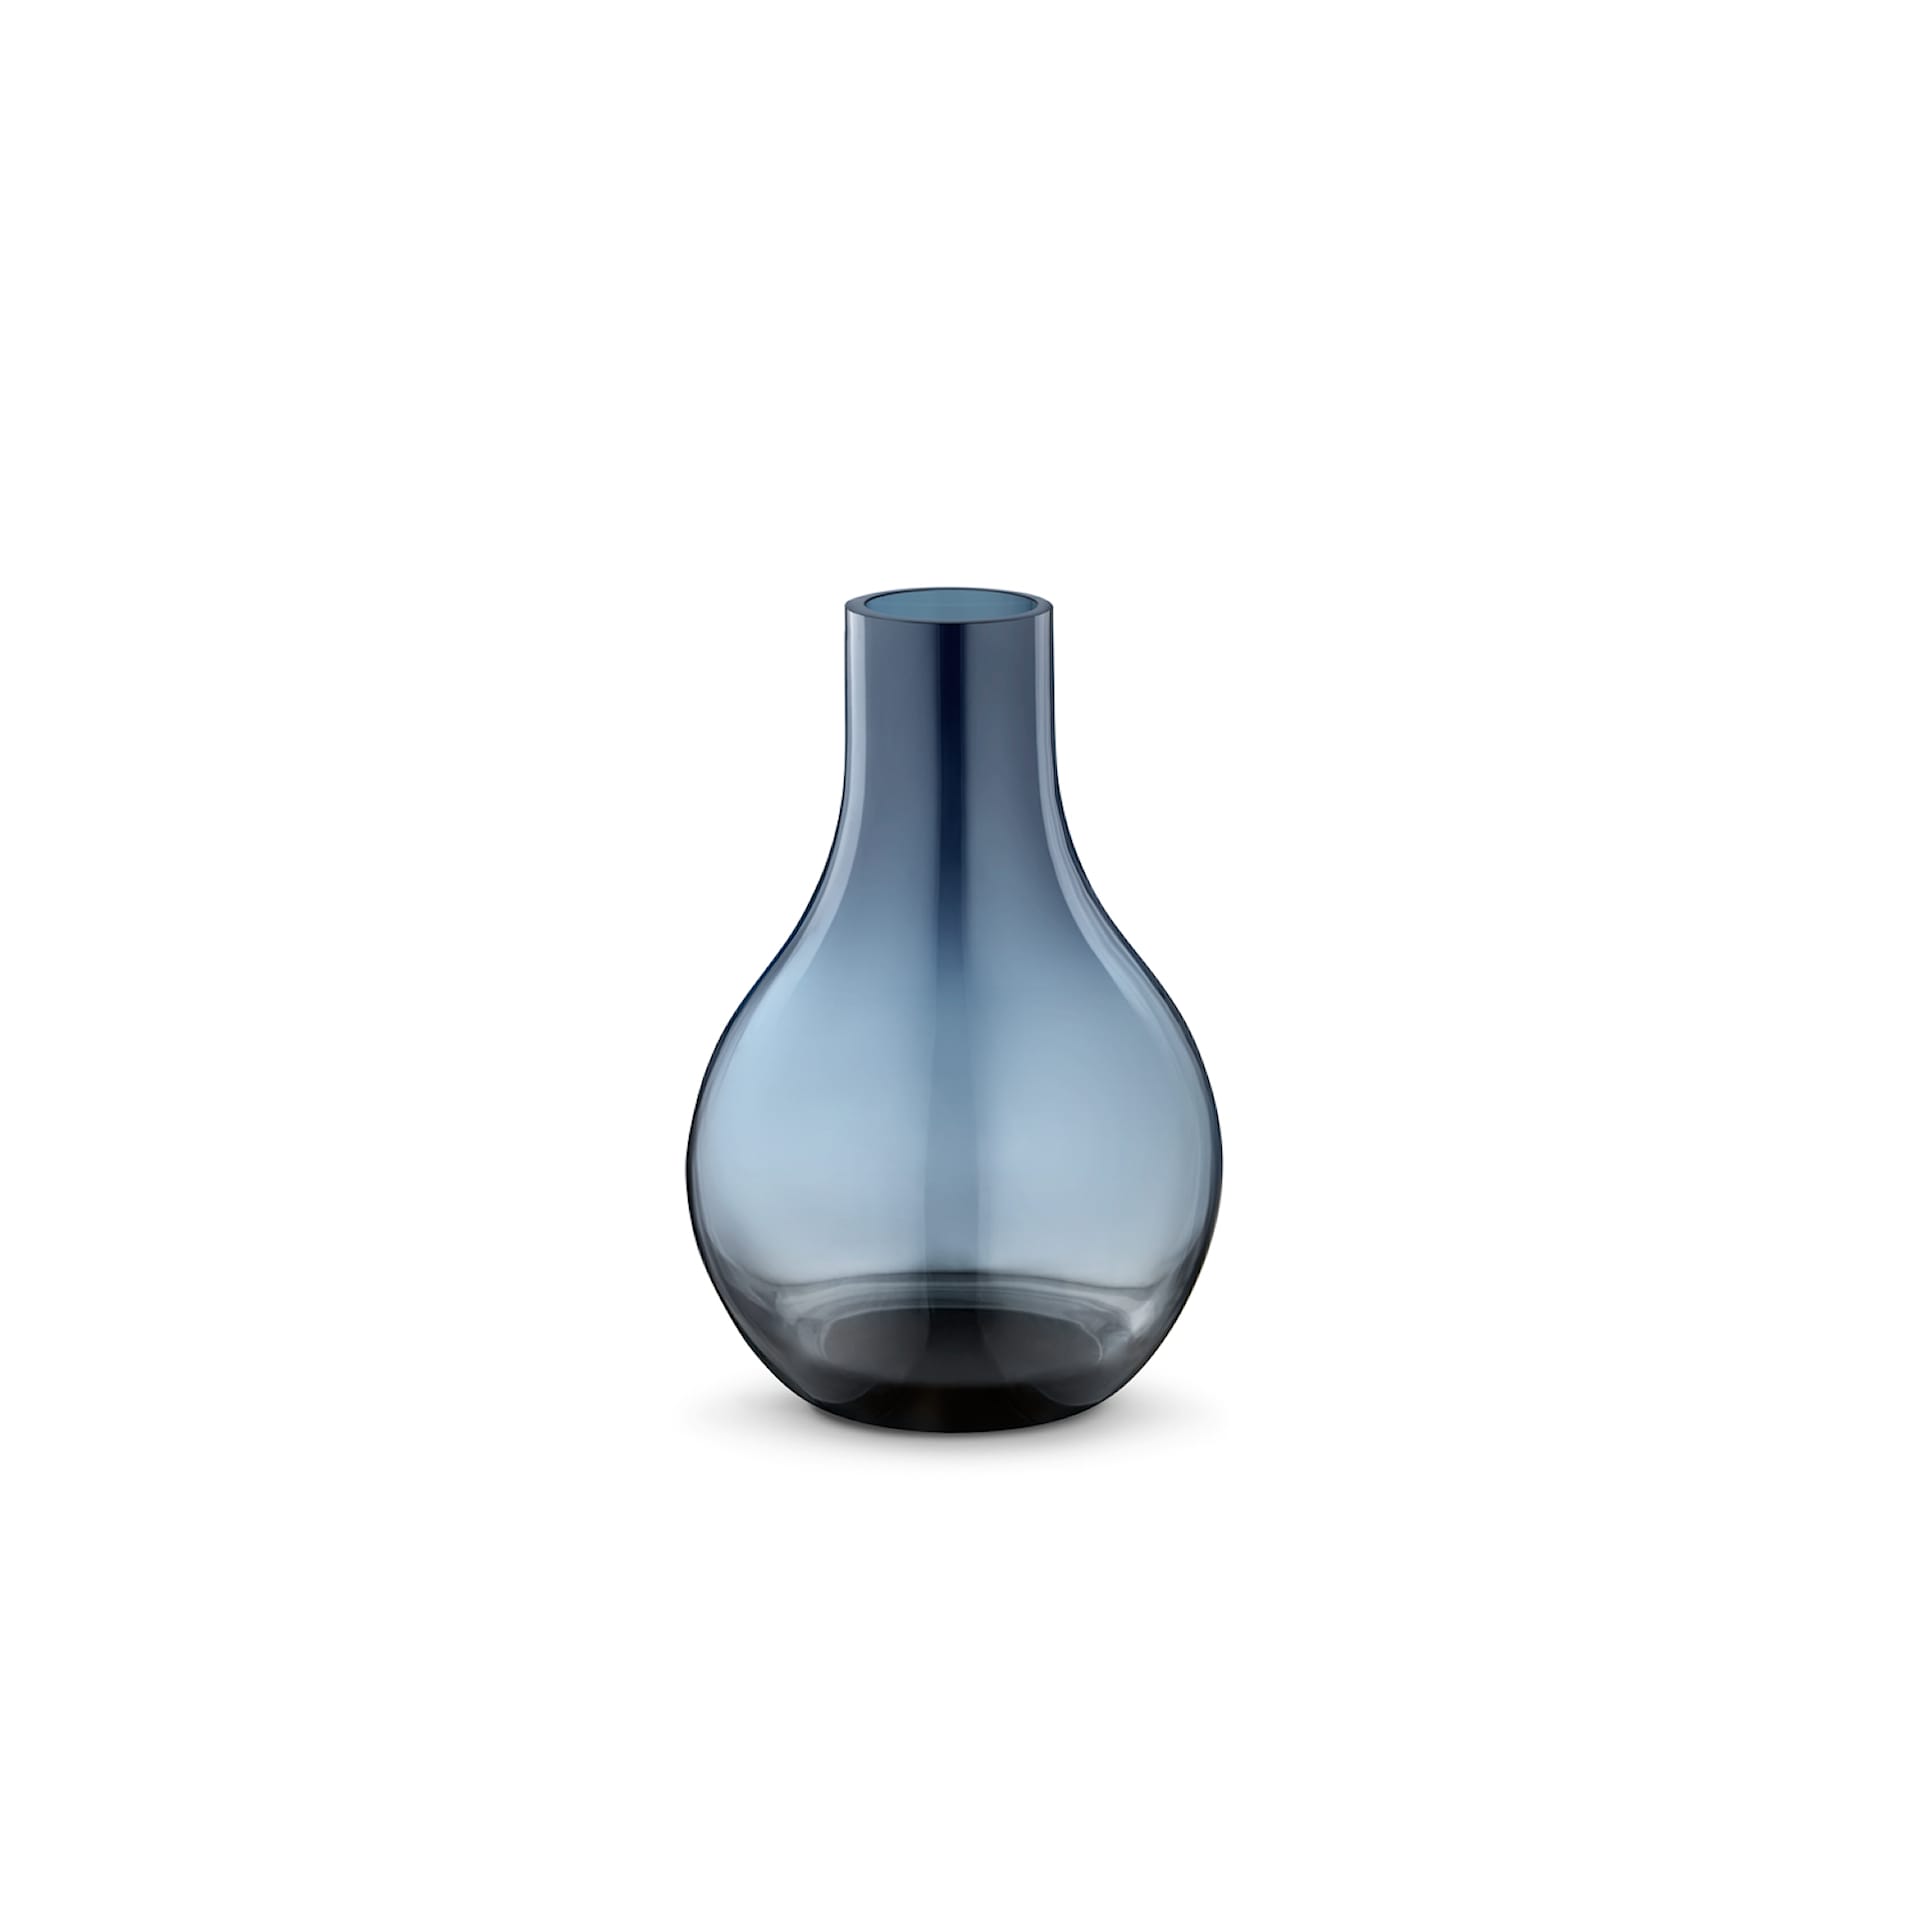 Cafu Vase Glass - Georg Jensen - NO GA